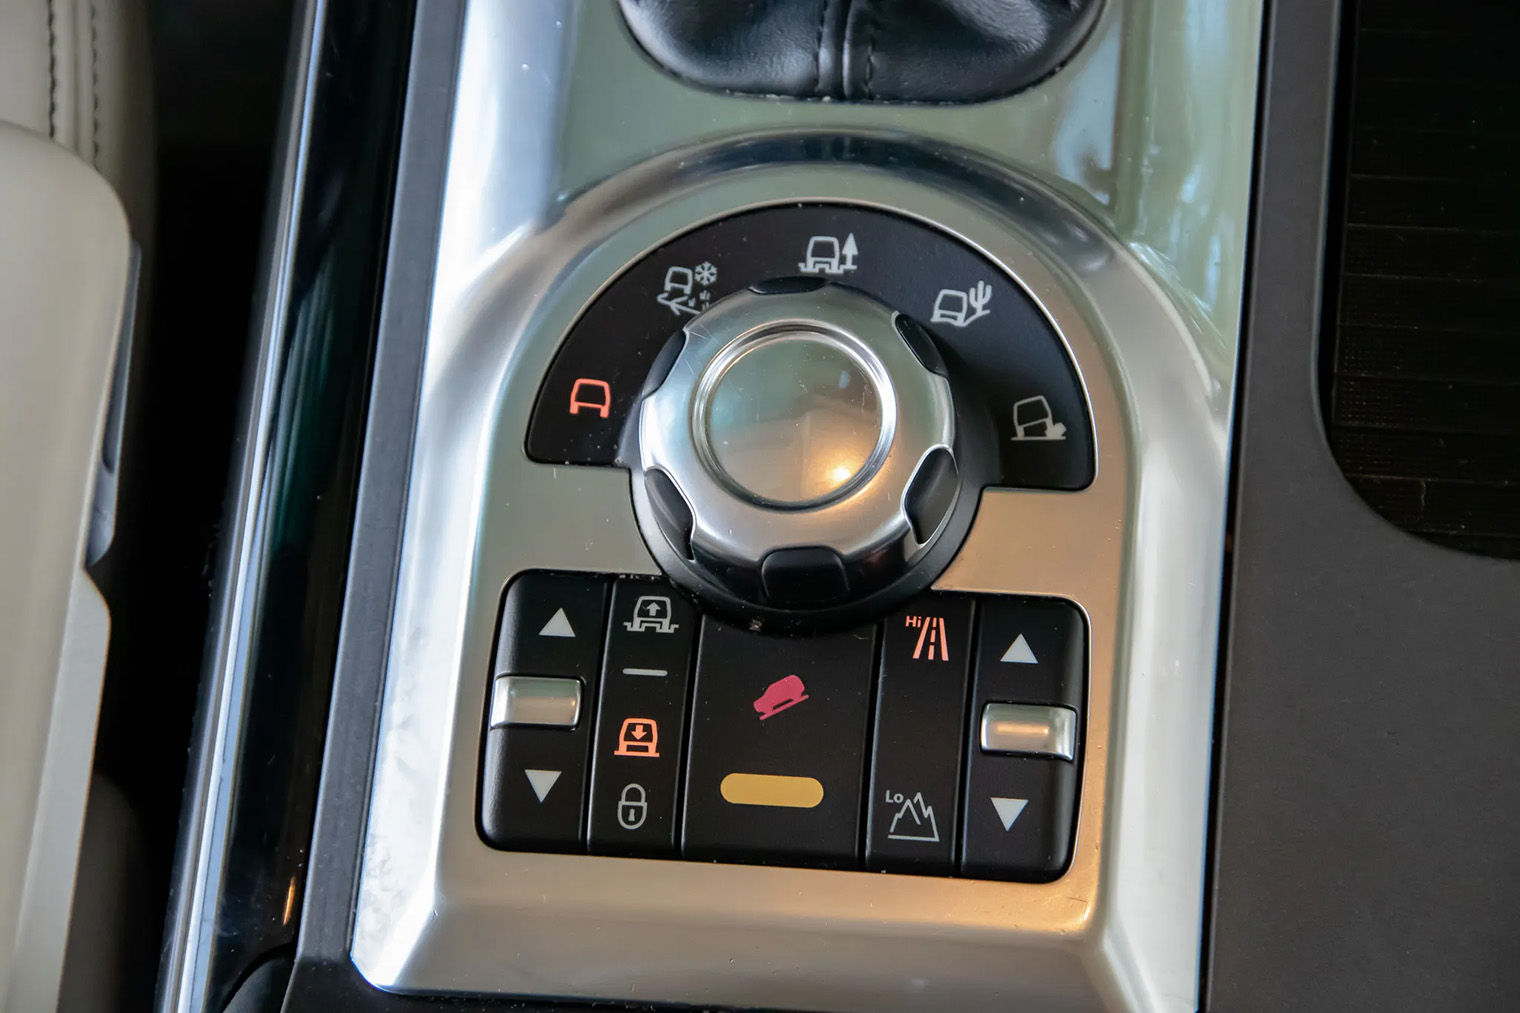 Шайба управления системой полного привода и пневмоподвески расположена удобно, но водители пользуются ею крайне редко: Range Rover L322 второго рестайлинга нечасто съезжает с асфальта. Источник: bringatrailer.com